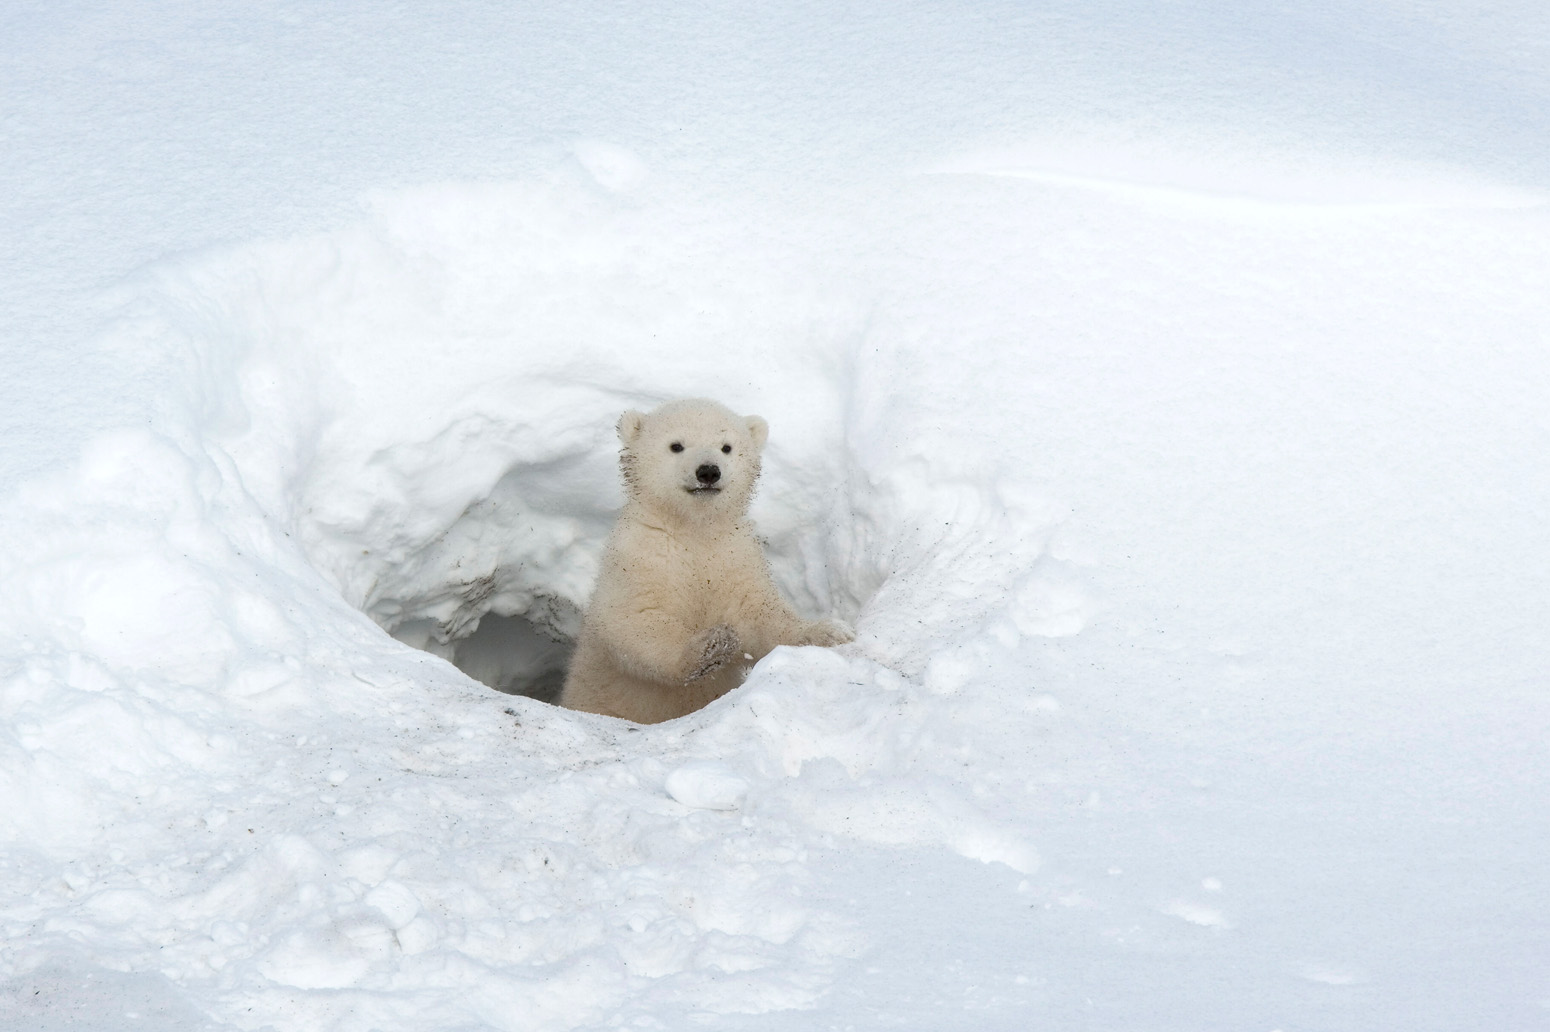 a baby polar bear, very cute